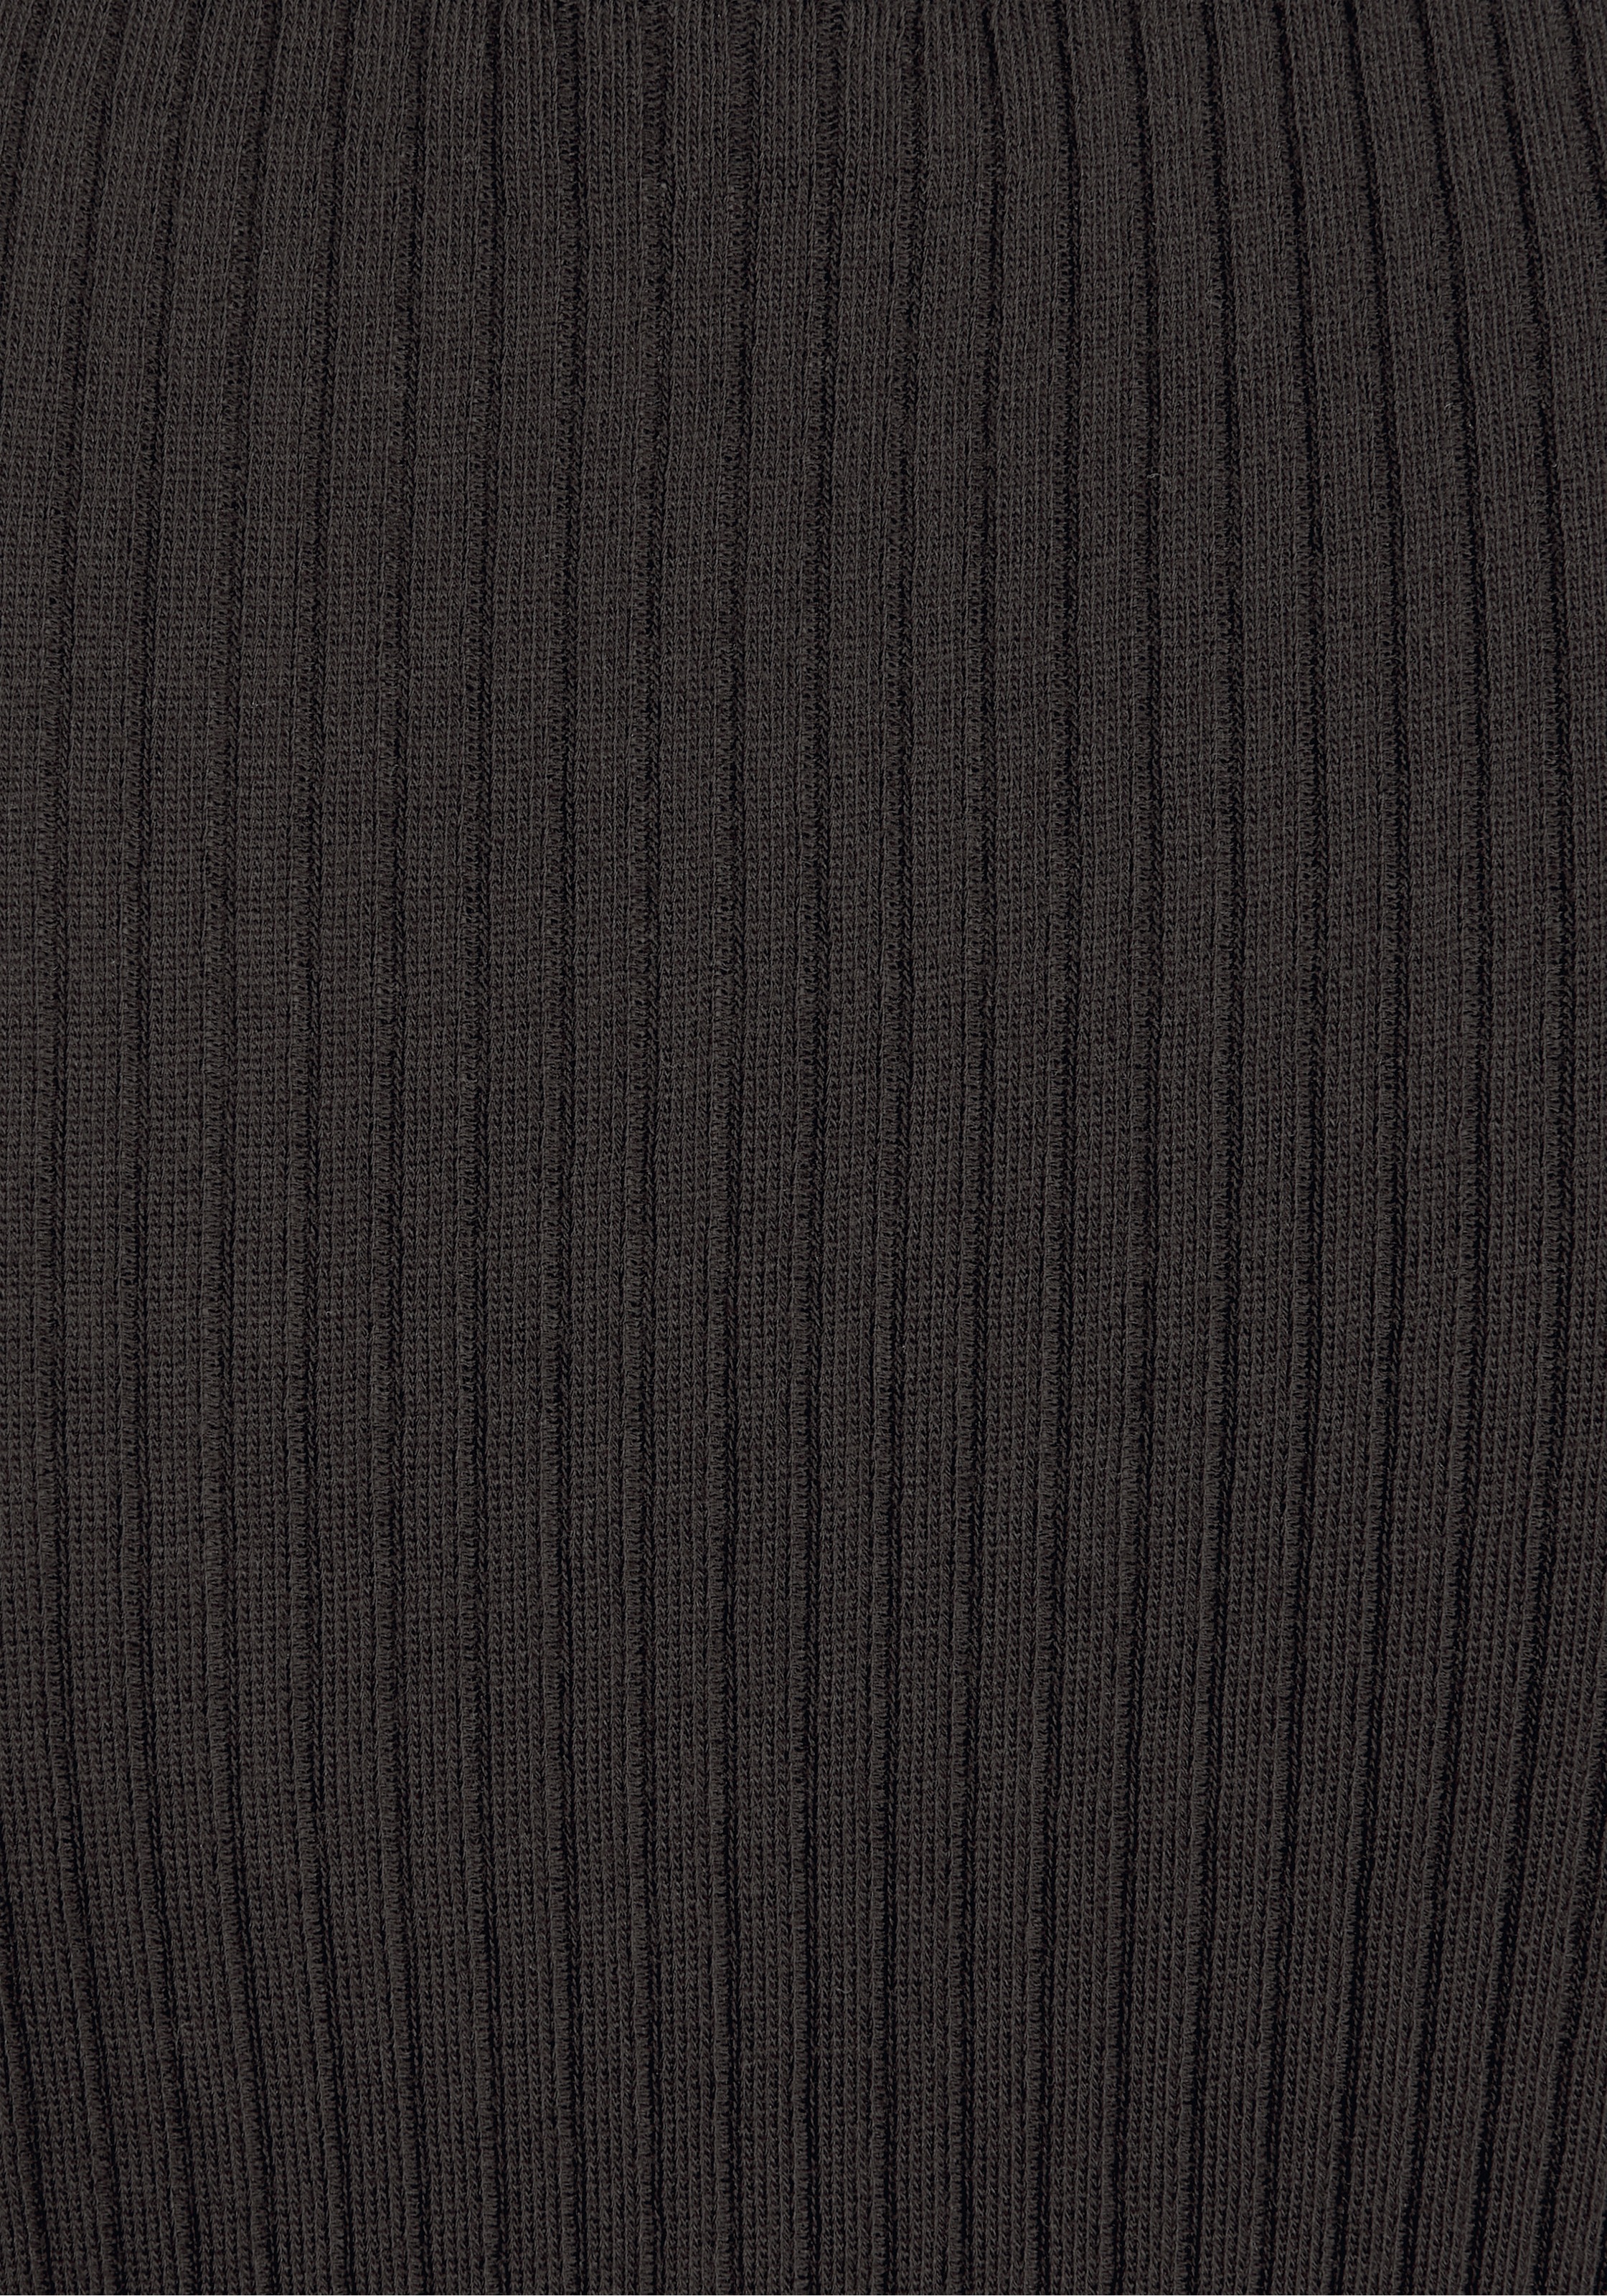 LASCANA Shirtkleid, mit gerippter Struktur » LASCANA | Bademode,  Unterwäsche & Lingerie online kaufen